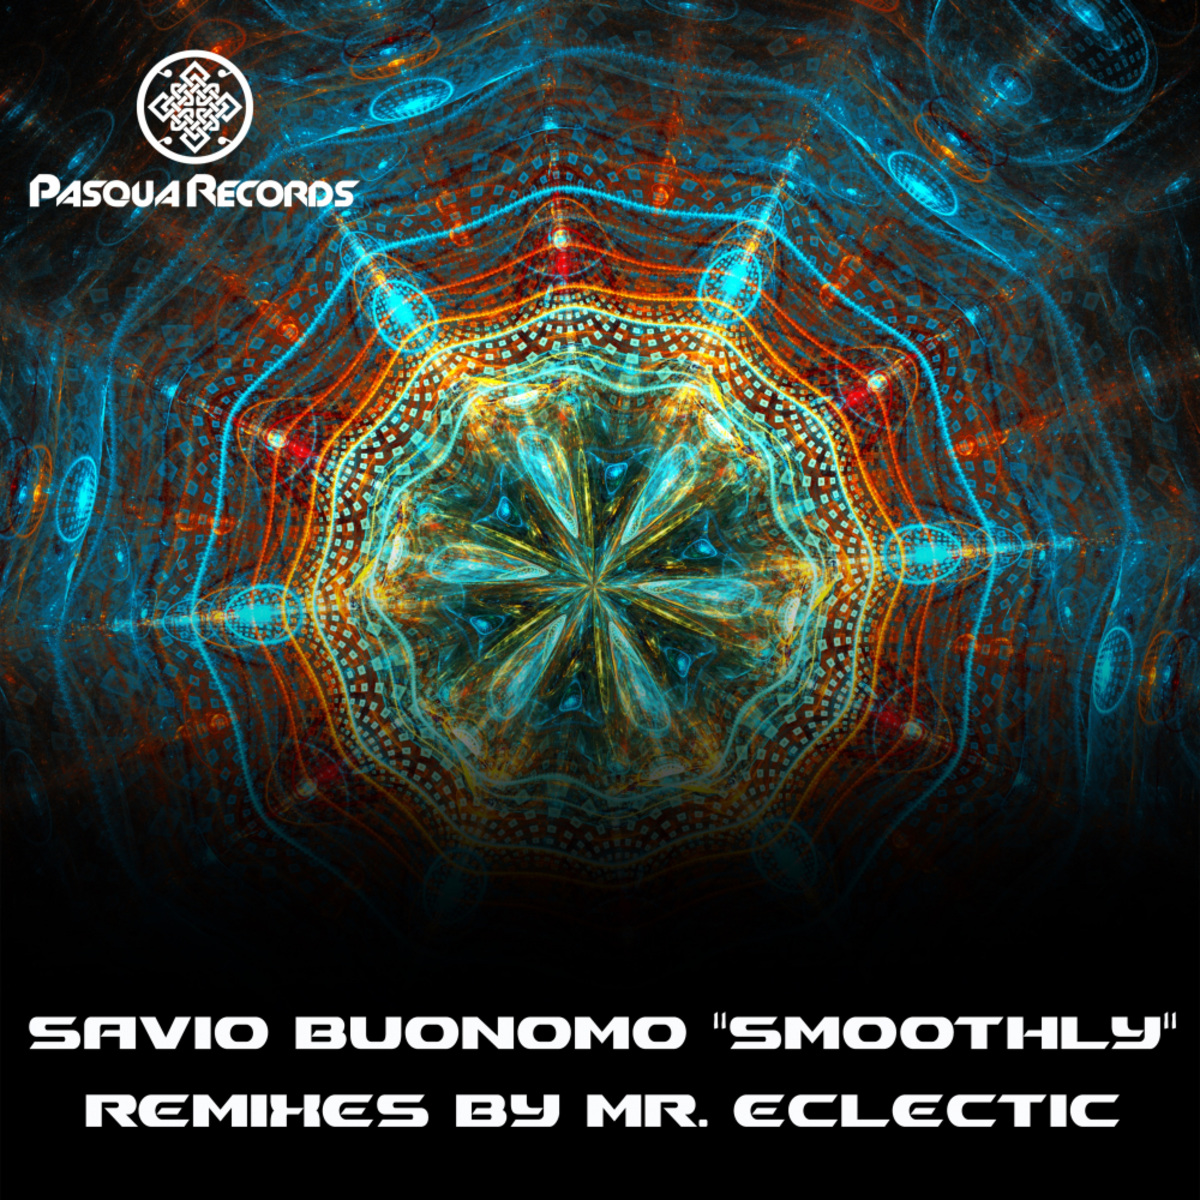 Savio Buonomo - Smoothly / Pasqua Records